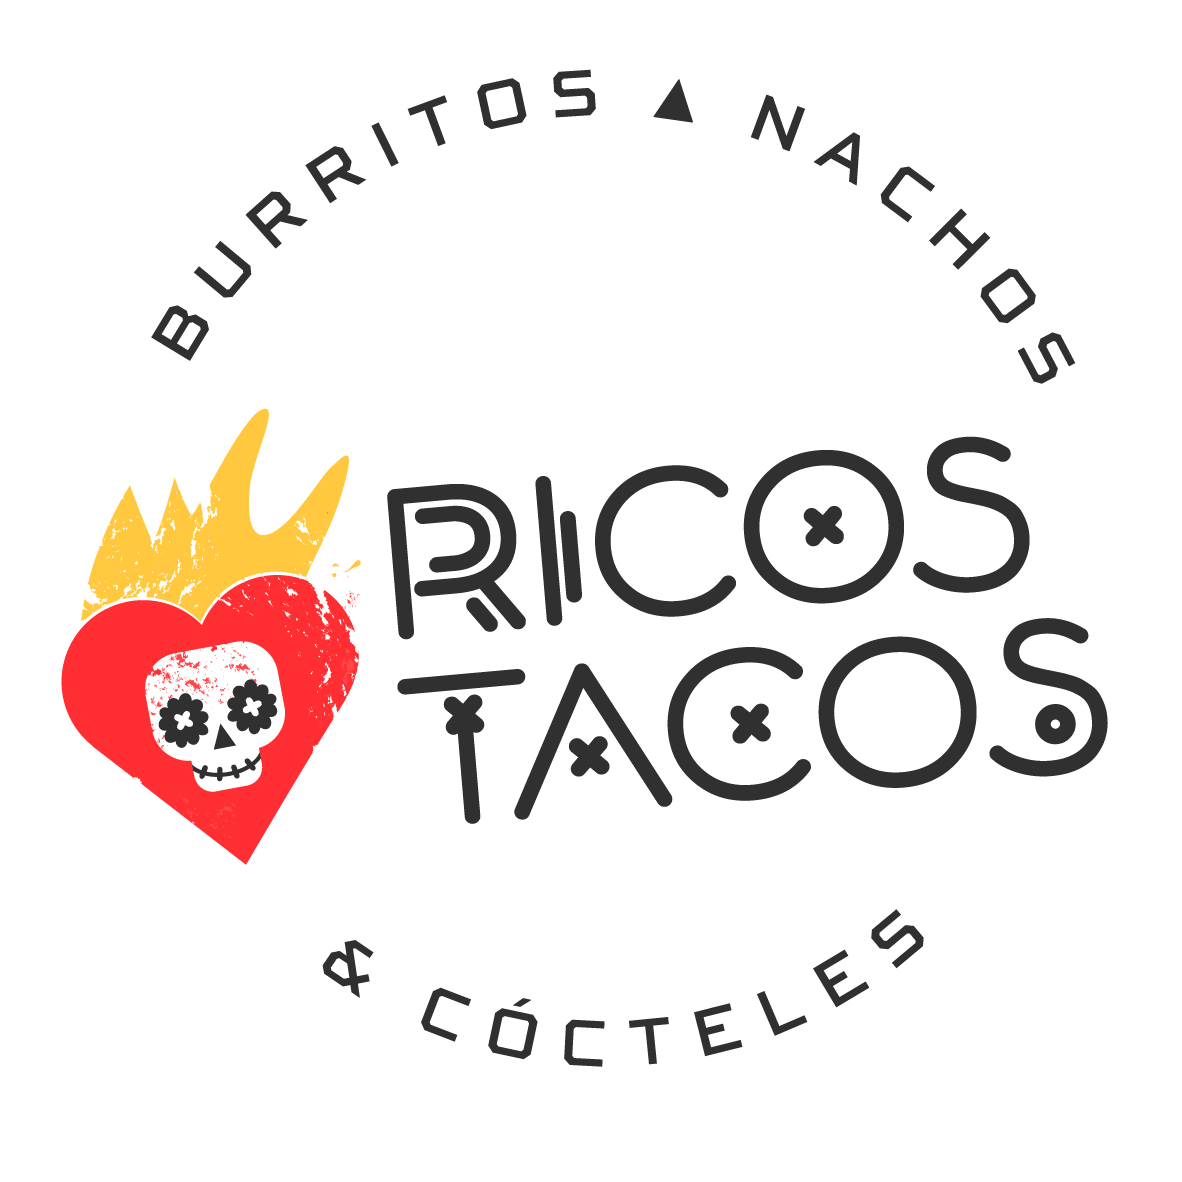 Ricos tacos